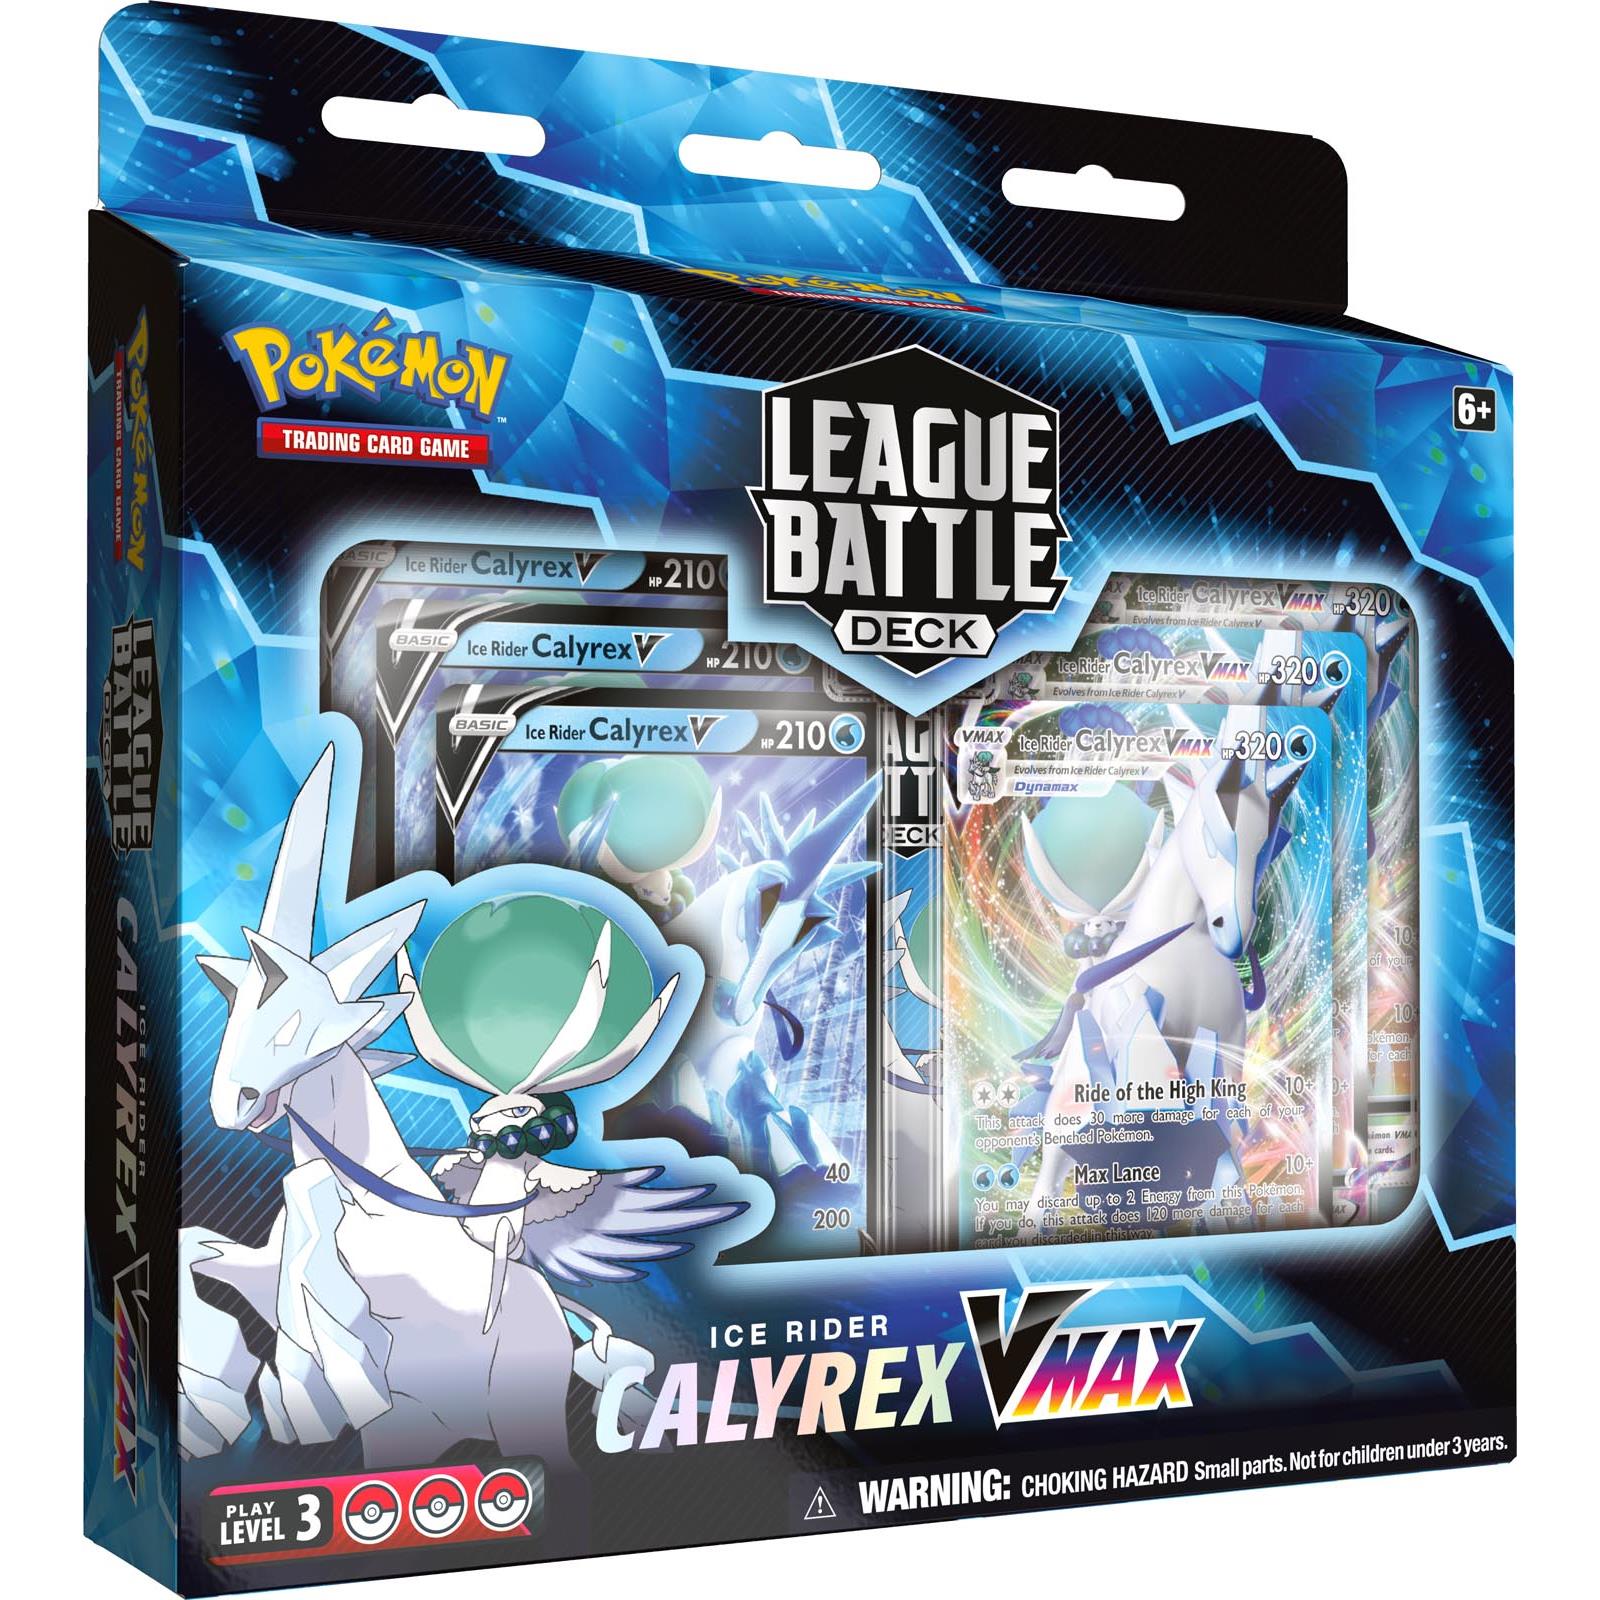 pokemon trading card game - calyrex vmax league battle deck